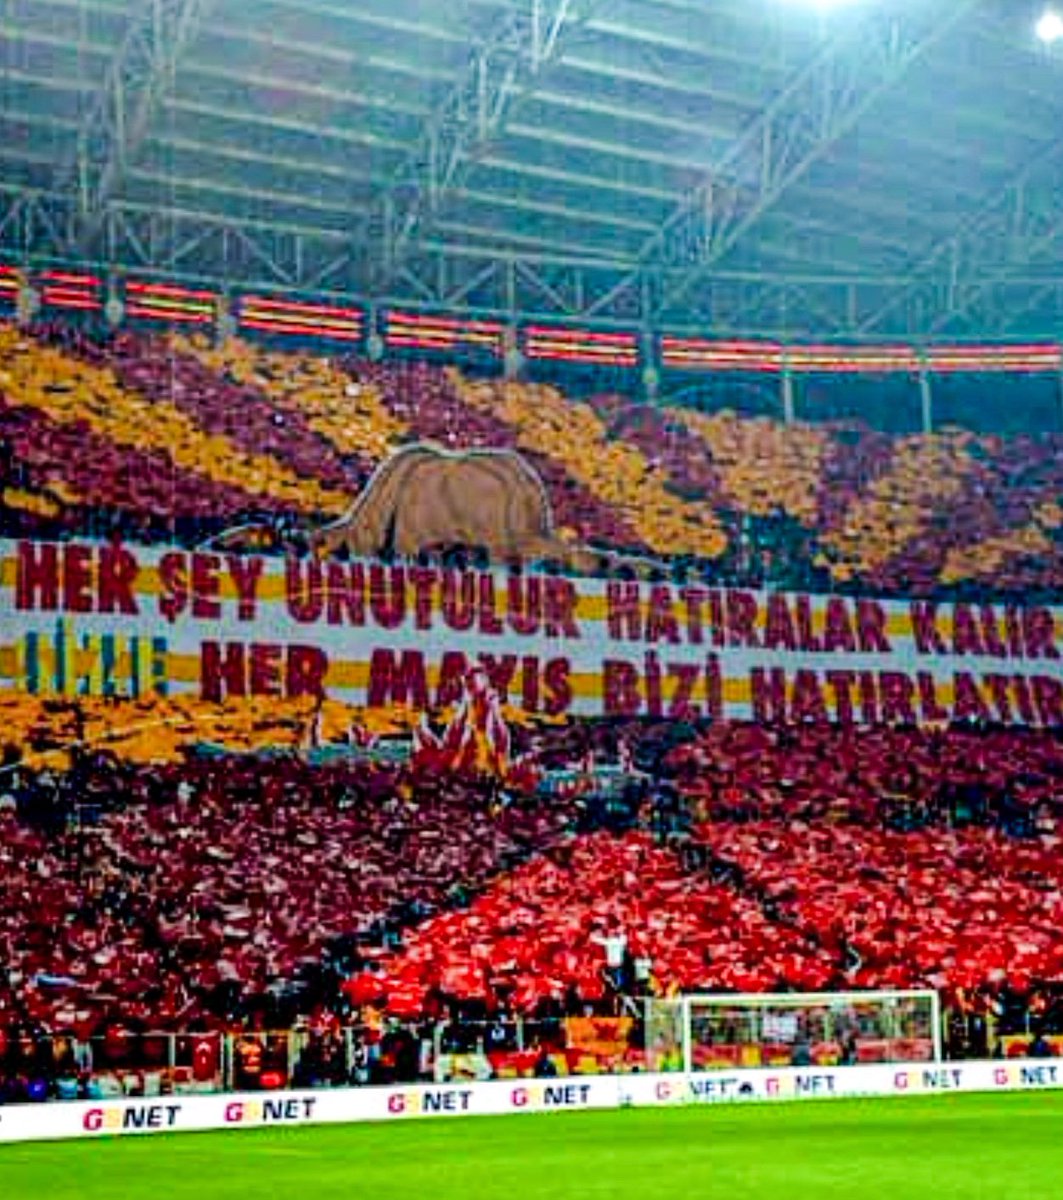 Mayıs ayında Galatasaray; 11 Mayıs: Galatasaray 5-1 Fenerbahçe 12 Mayıs: Kadıköy Hatırası 14 Mayıs: Denizli faciası 17 Mayıs: UEFA Şampiyonluğu 19 Mayıs: 21. ve 22. Şampiyonluk, 24.⏳ 25 Mayıs: 20. Şampiyonluk ve 4. yıldız 30 Mayıs: 23. Şampiyonluk Mayıslar, bizimdir...😎